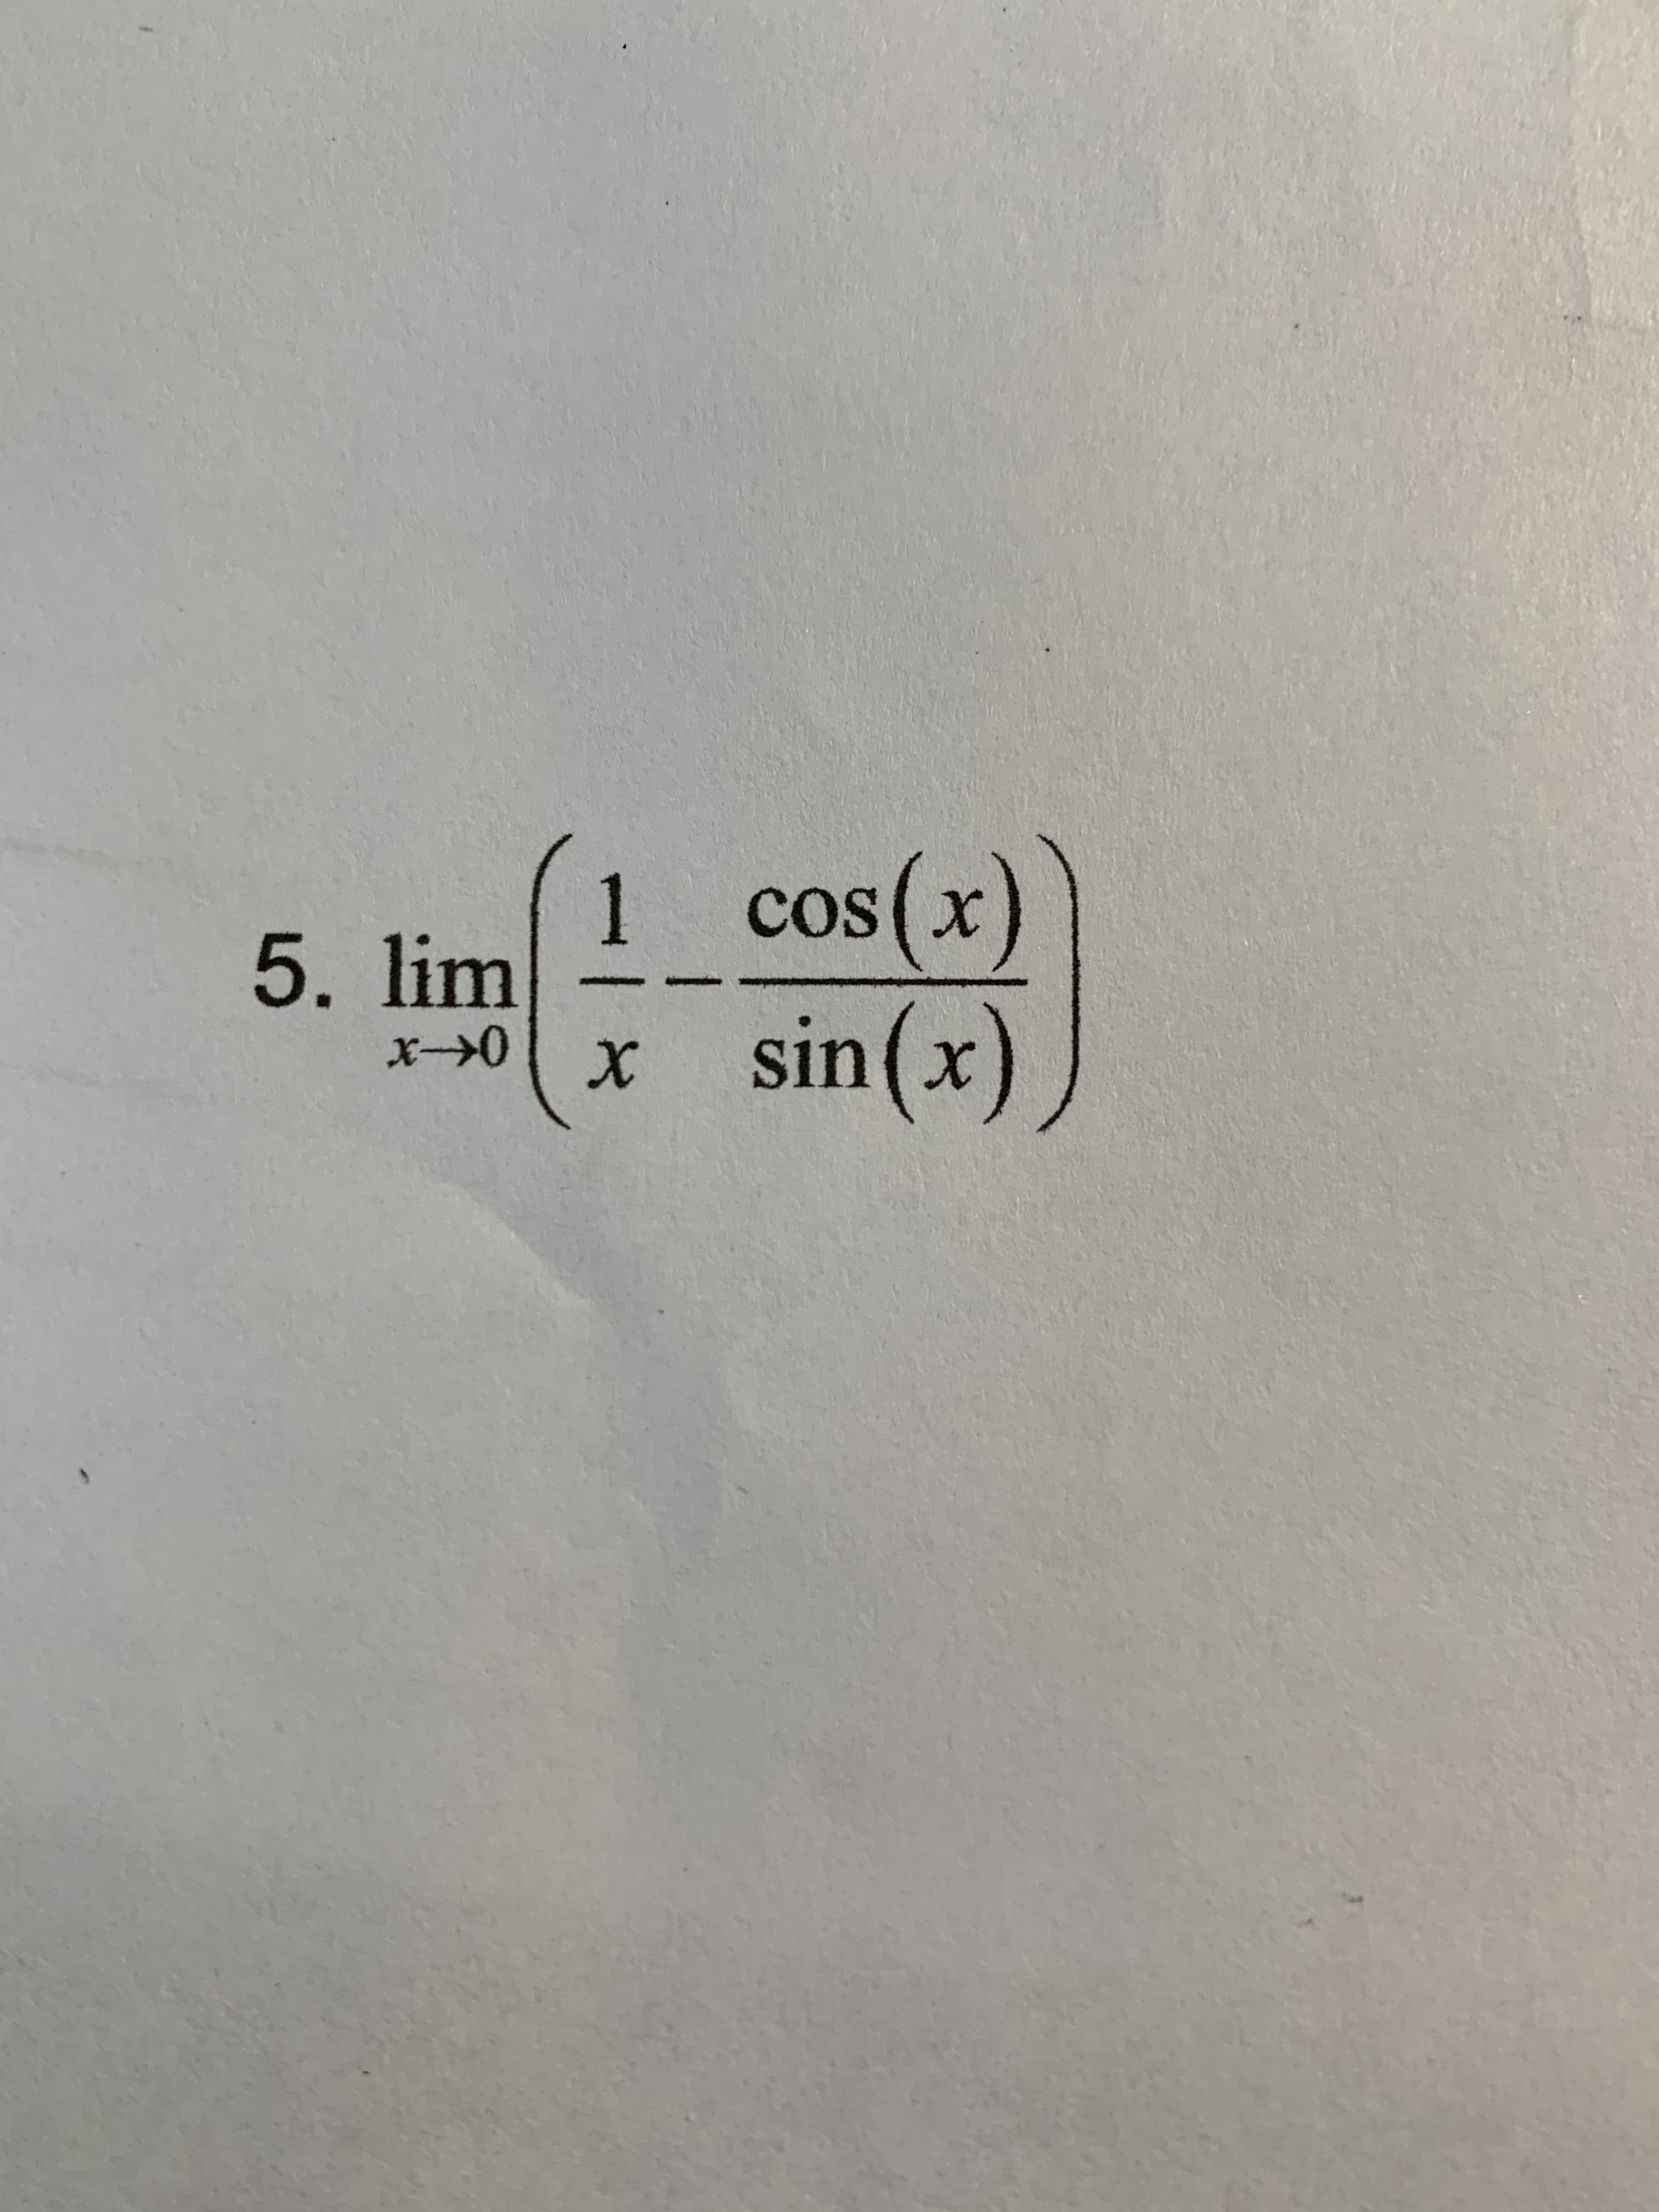 (x)us
(x)s)
sin
1.
5.lim
